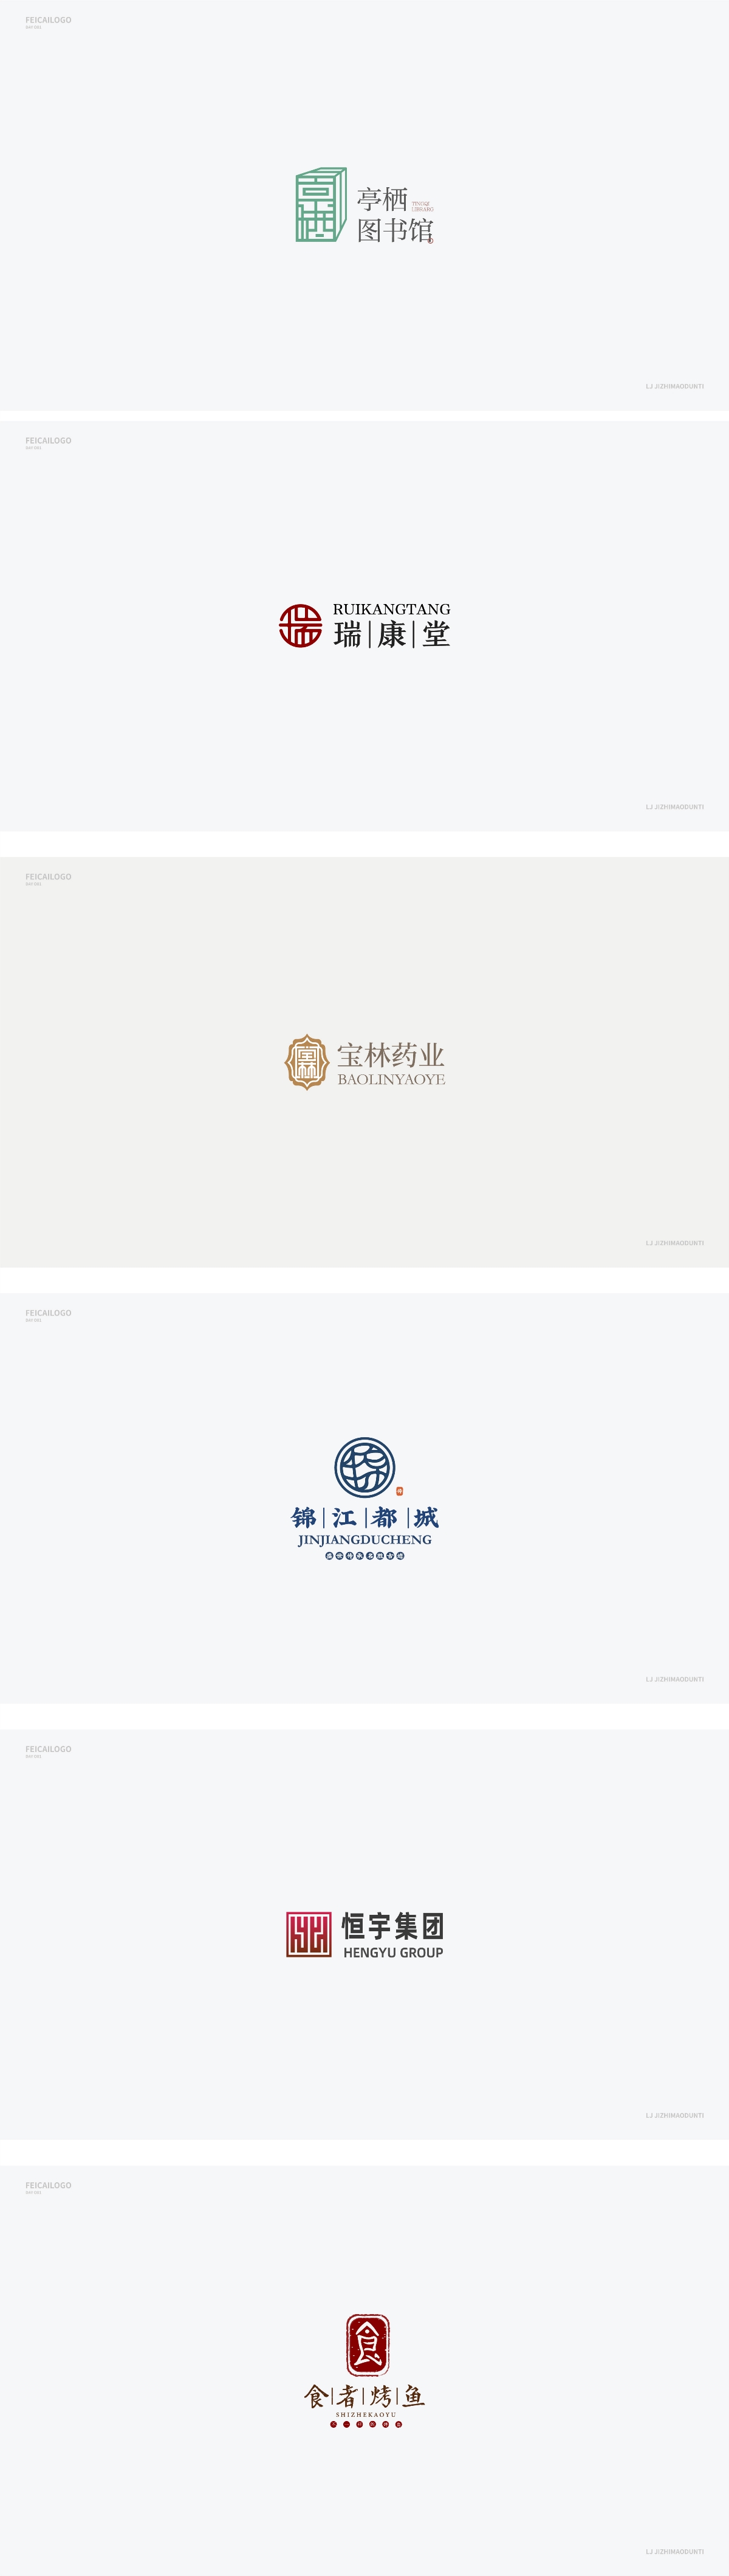 2019 FEBRUARY\MAY logo标志合集